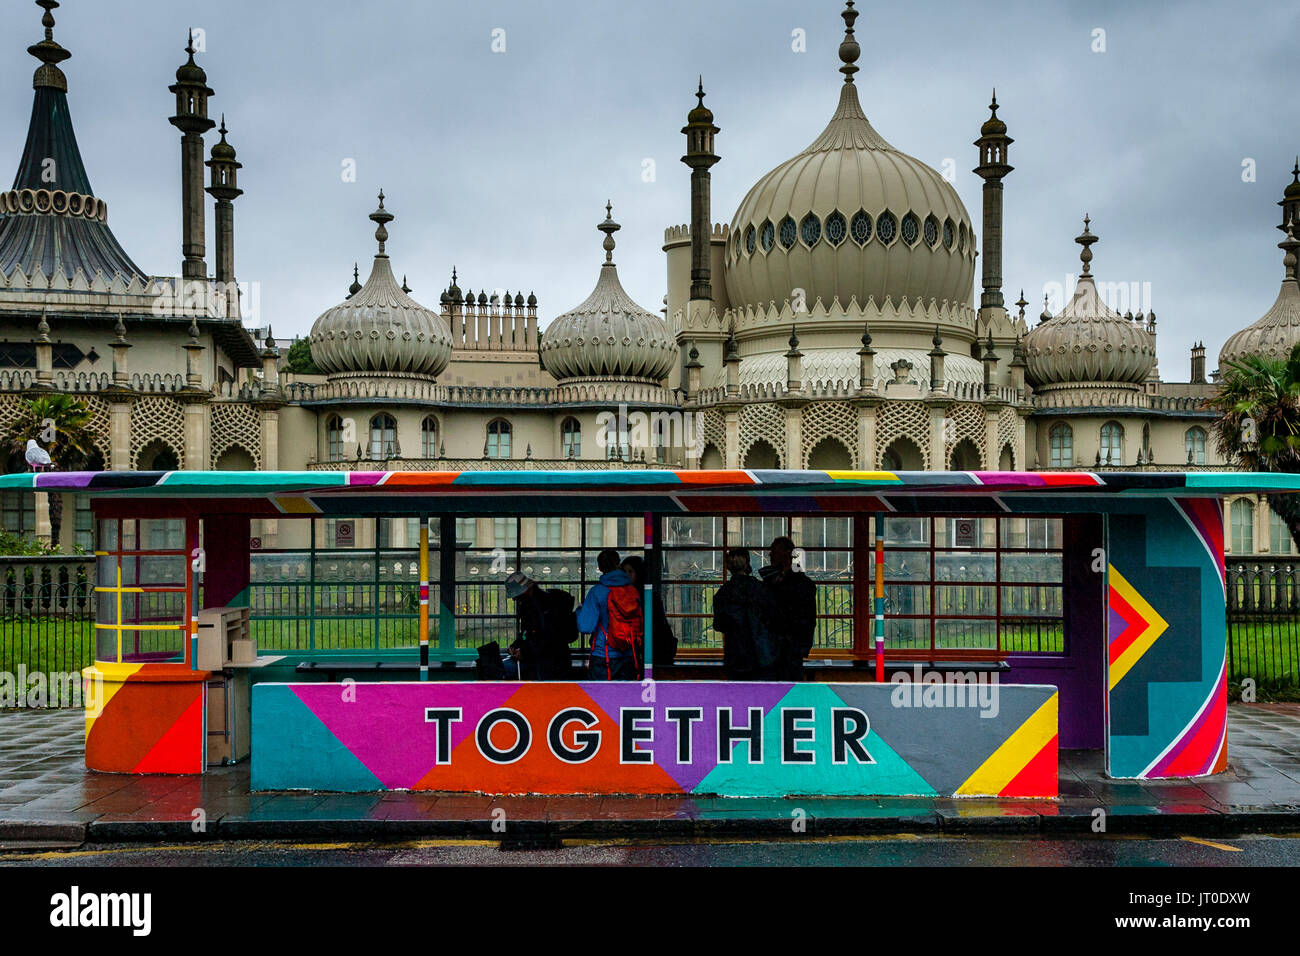 Personnes en attente d'un bus à l'intérieur d'un abri bus peintes de couleurs vives, Brighton, Sussex, UK Banque D'Images